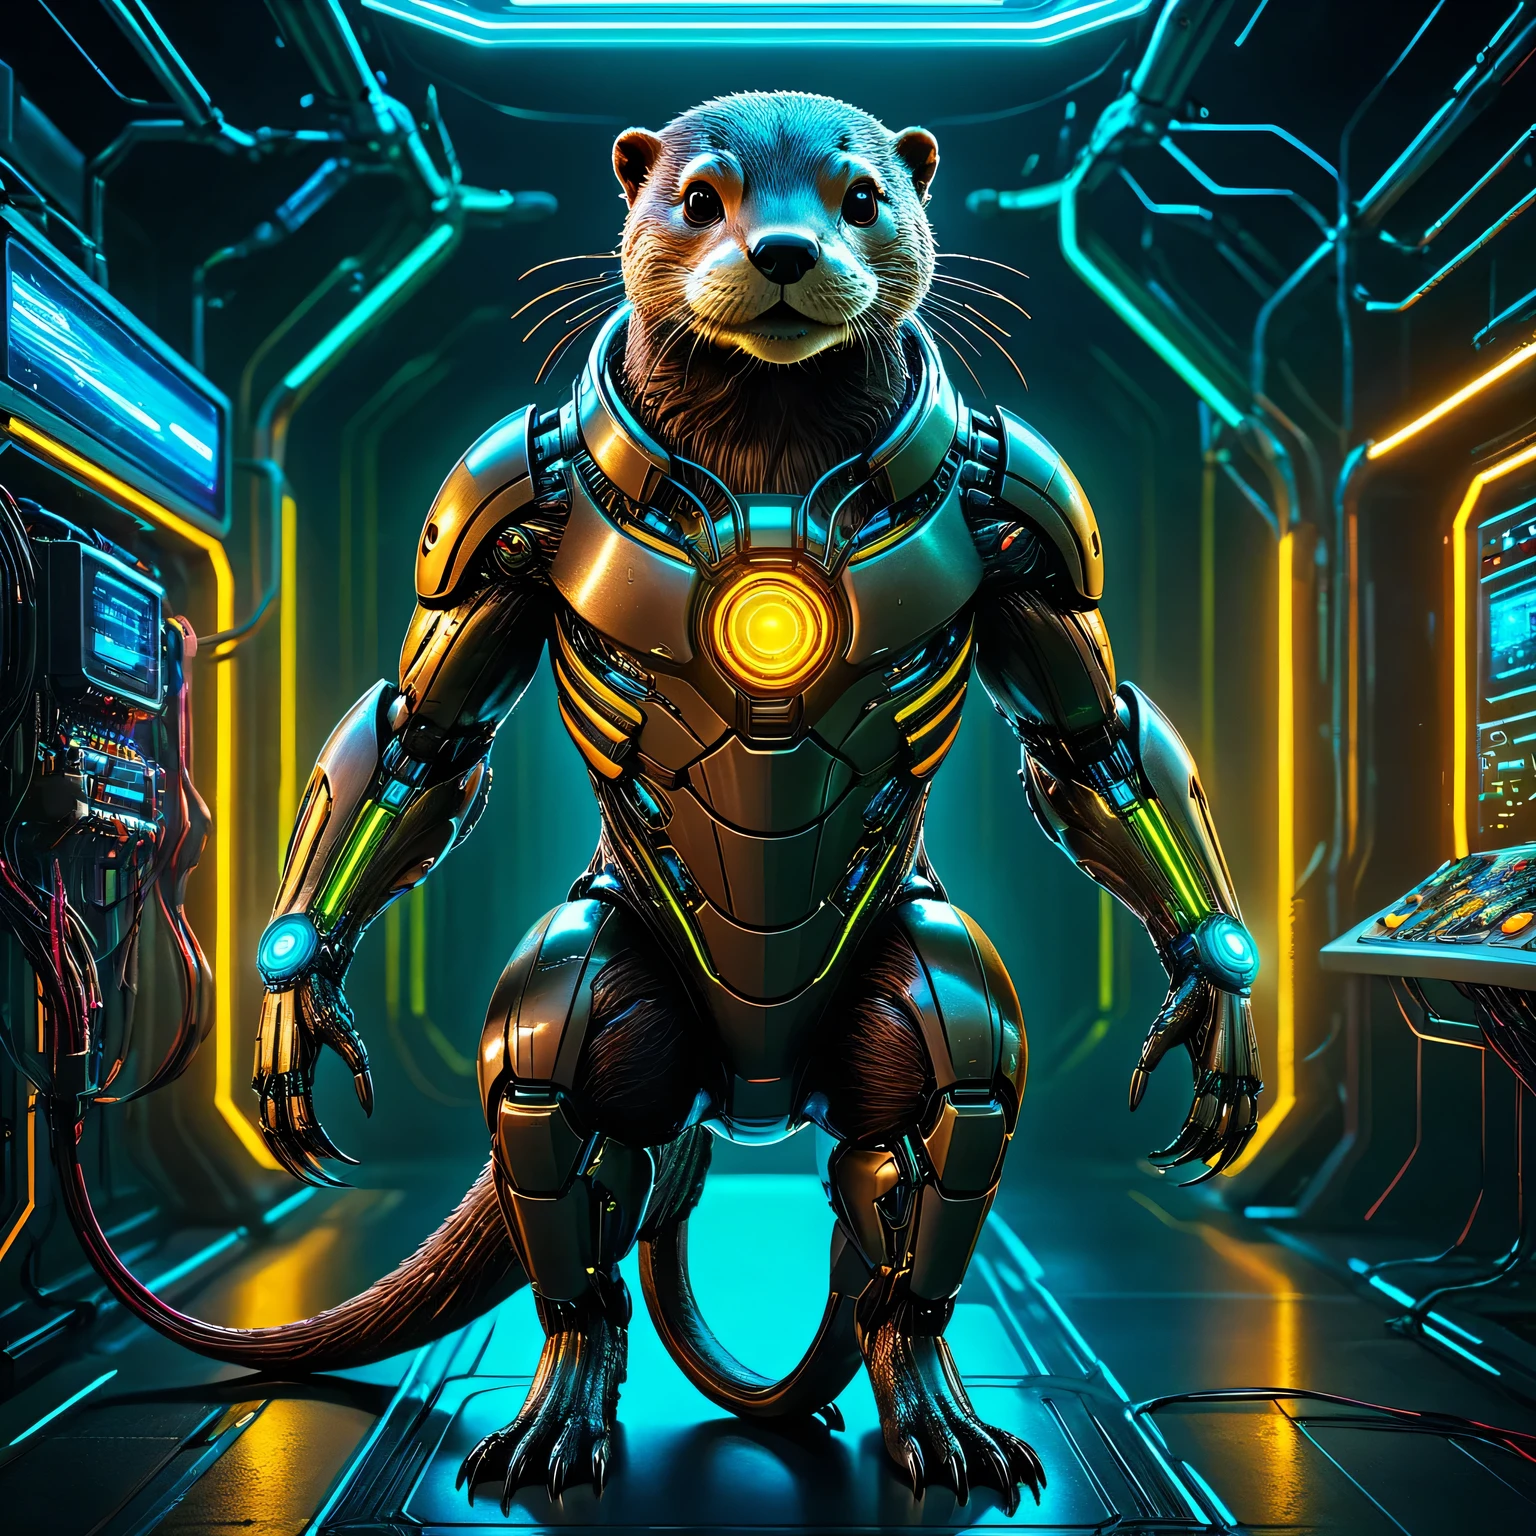 An Otter Cyber Art, Otter ist ein hochentwickelter High-Tech-Cyborg mit künstlicher Intelligenz in einem geheimen Cyber-Labor, schwierig, ausführlich, Drähte und Elektronik, Licht und Laser, Neon, Sensoren, ausführlich photo, Otter Cyborg wird im Detail gezeigt, volle pose, Ganzkörper, Texturglättung, Unreal Engine 5